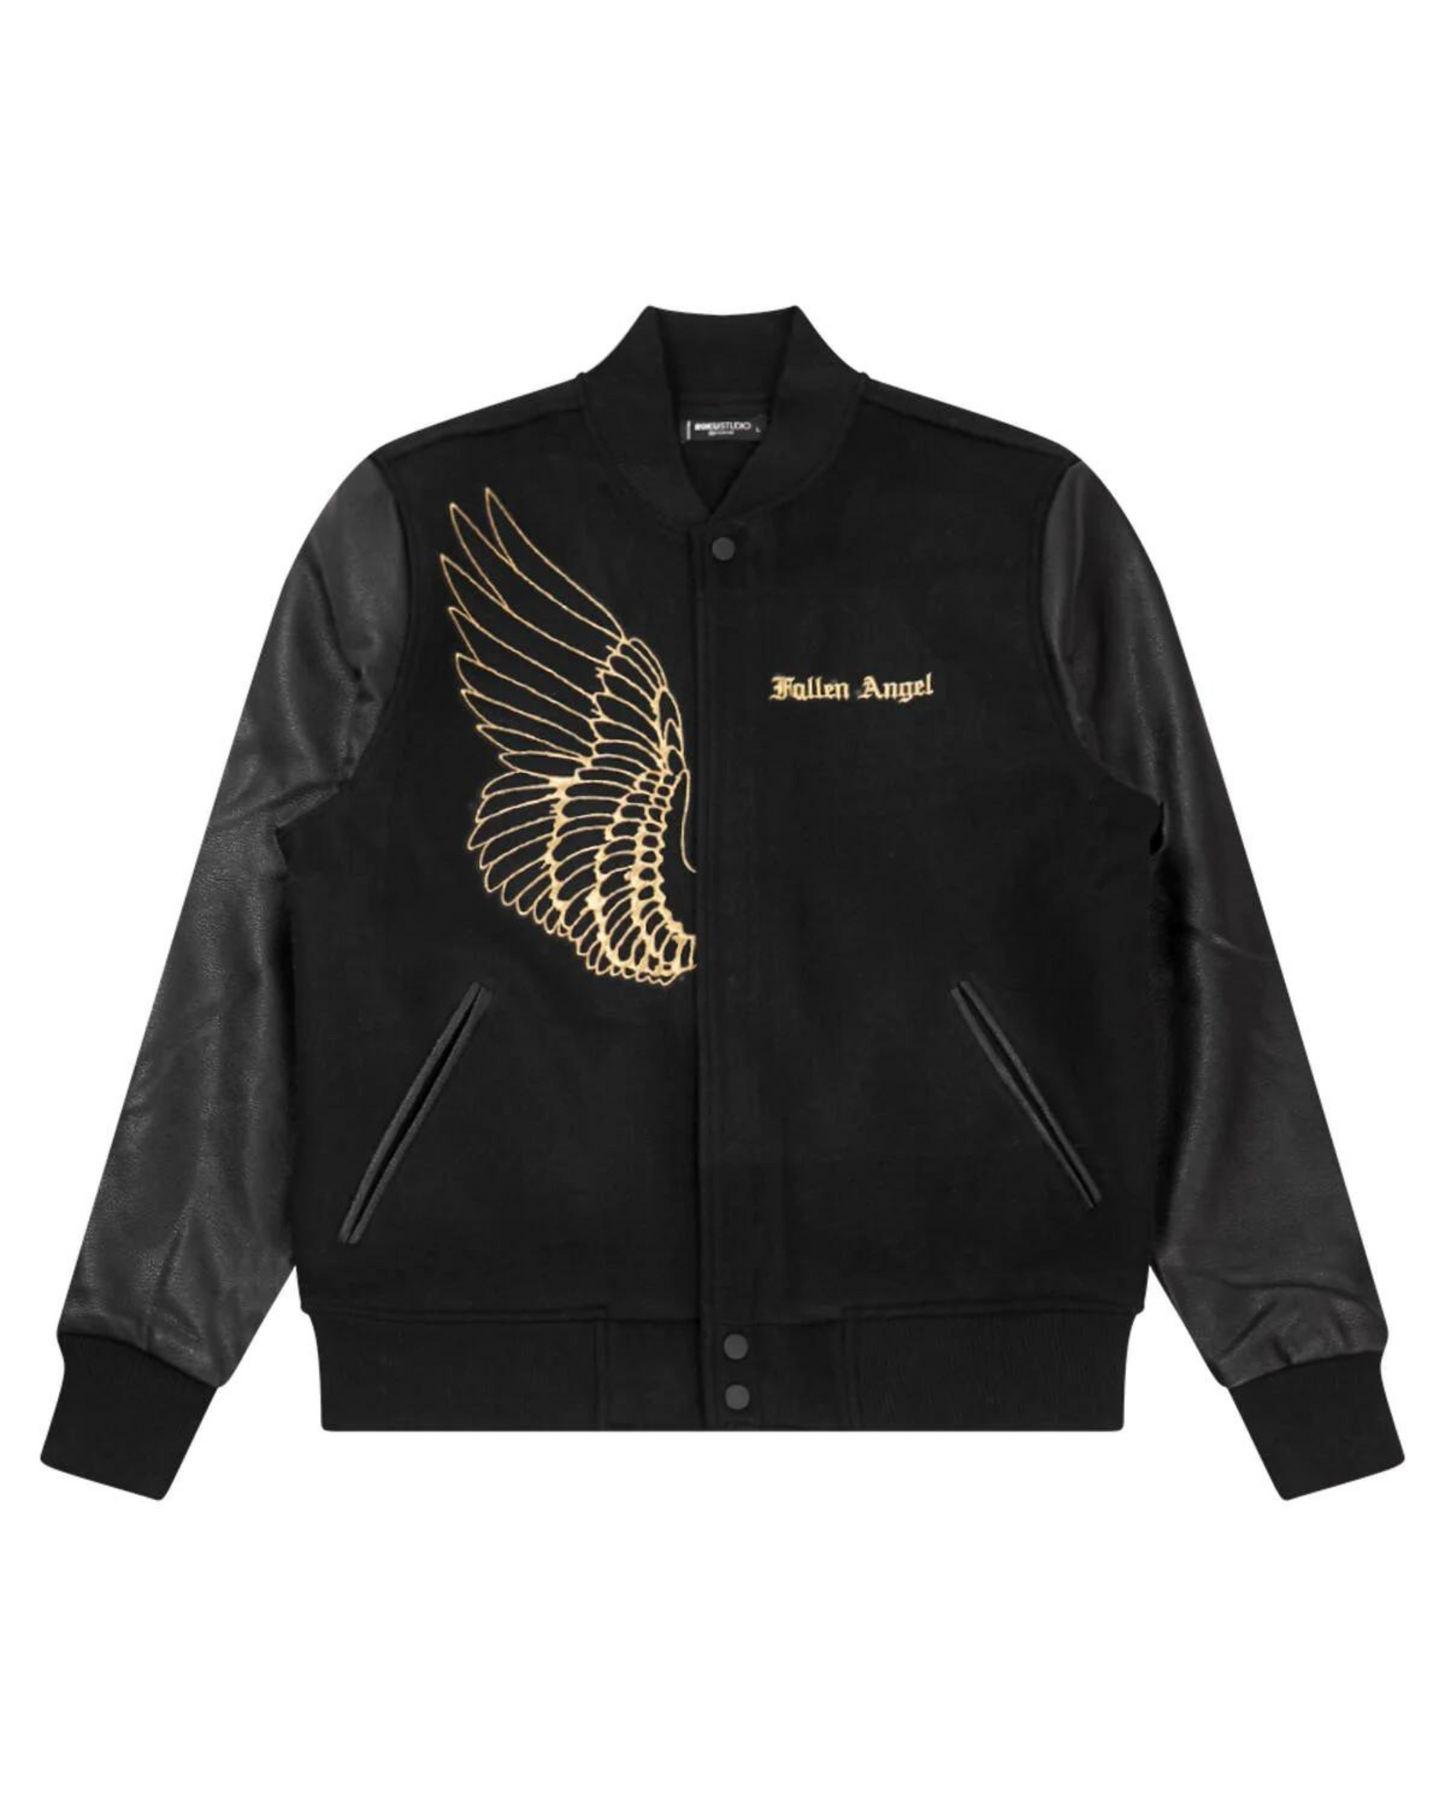 Fallen Angels Varsity Jacket